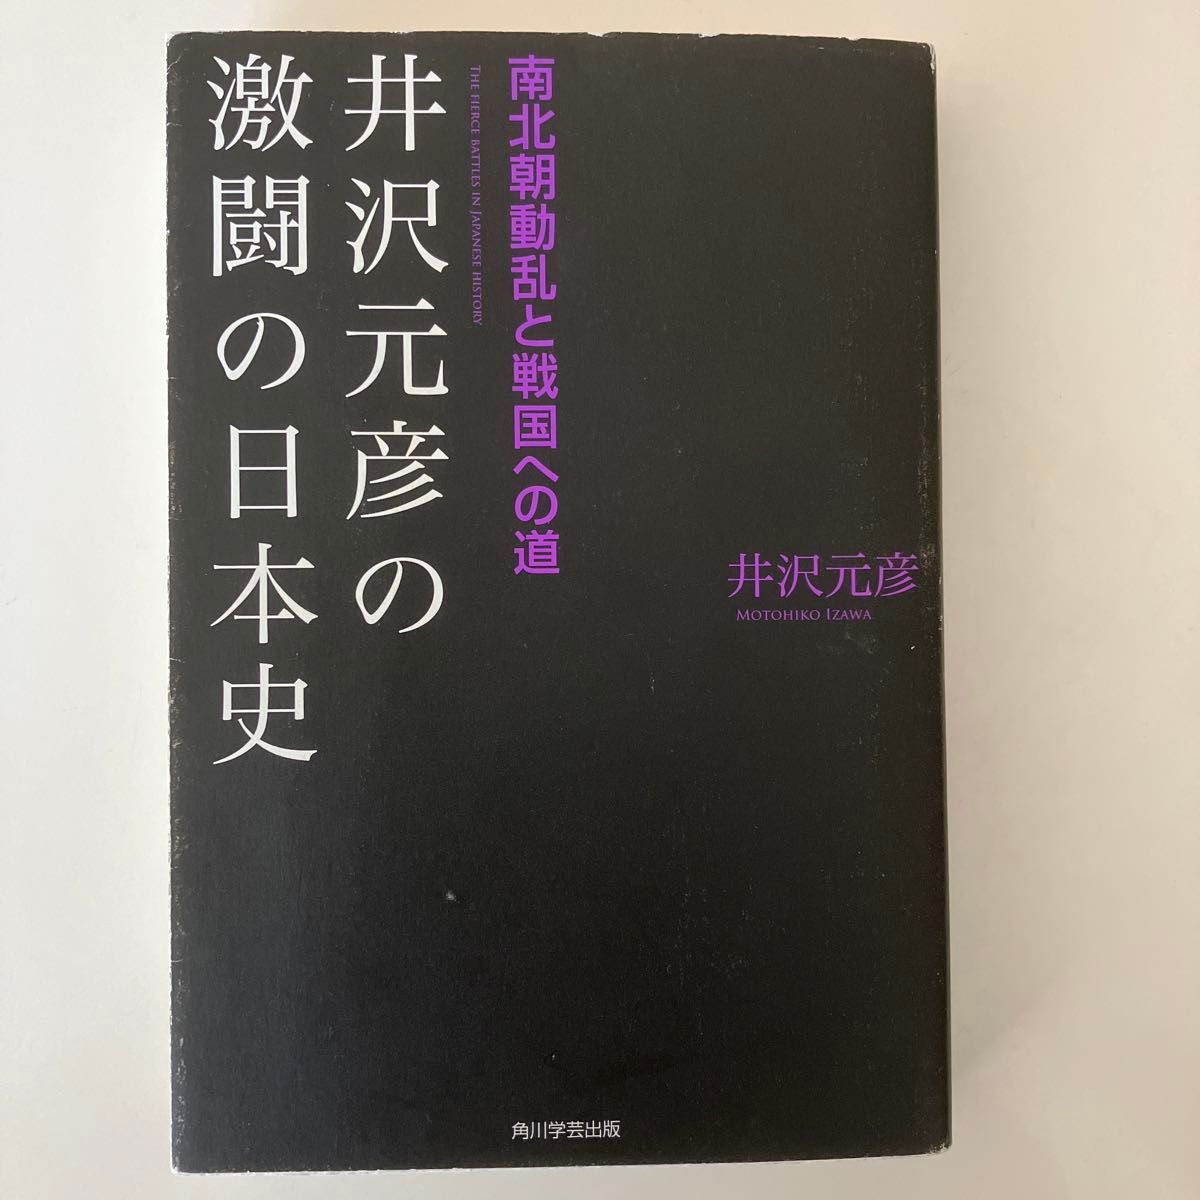 井沢元彦の激闘の日本史　南北朝動乱と戦国への道